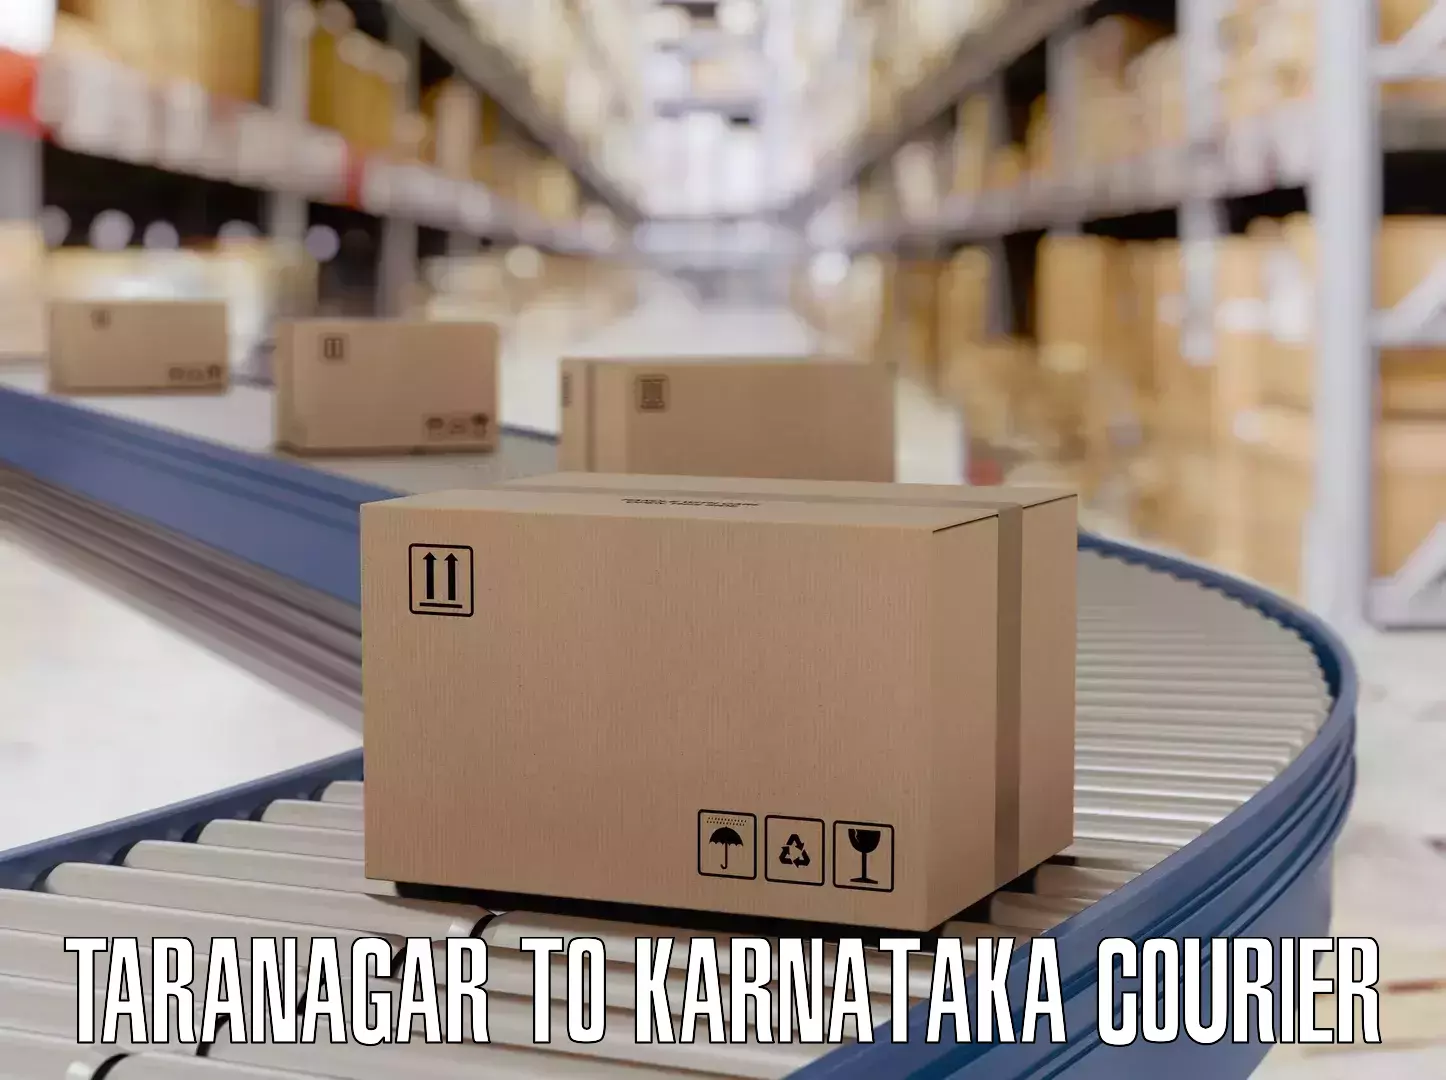 Baggage relocation service Taranagar to Kodagu